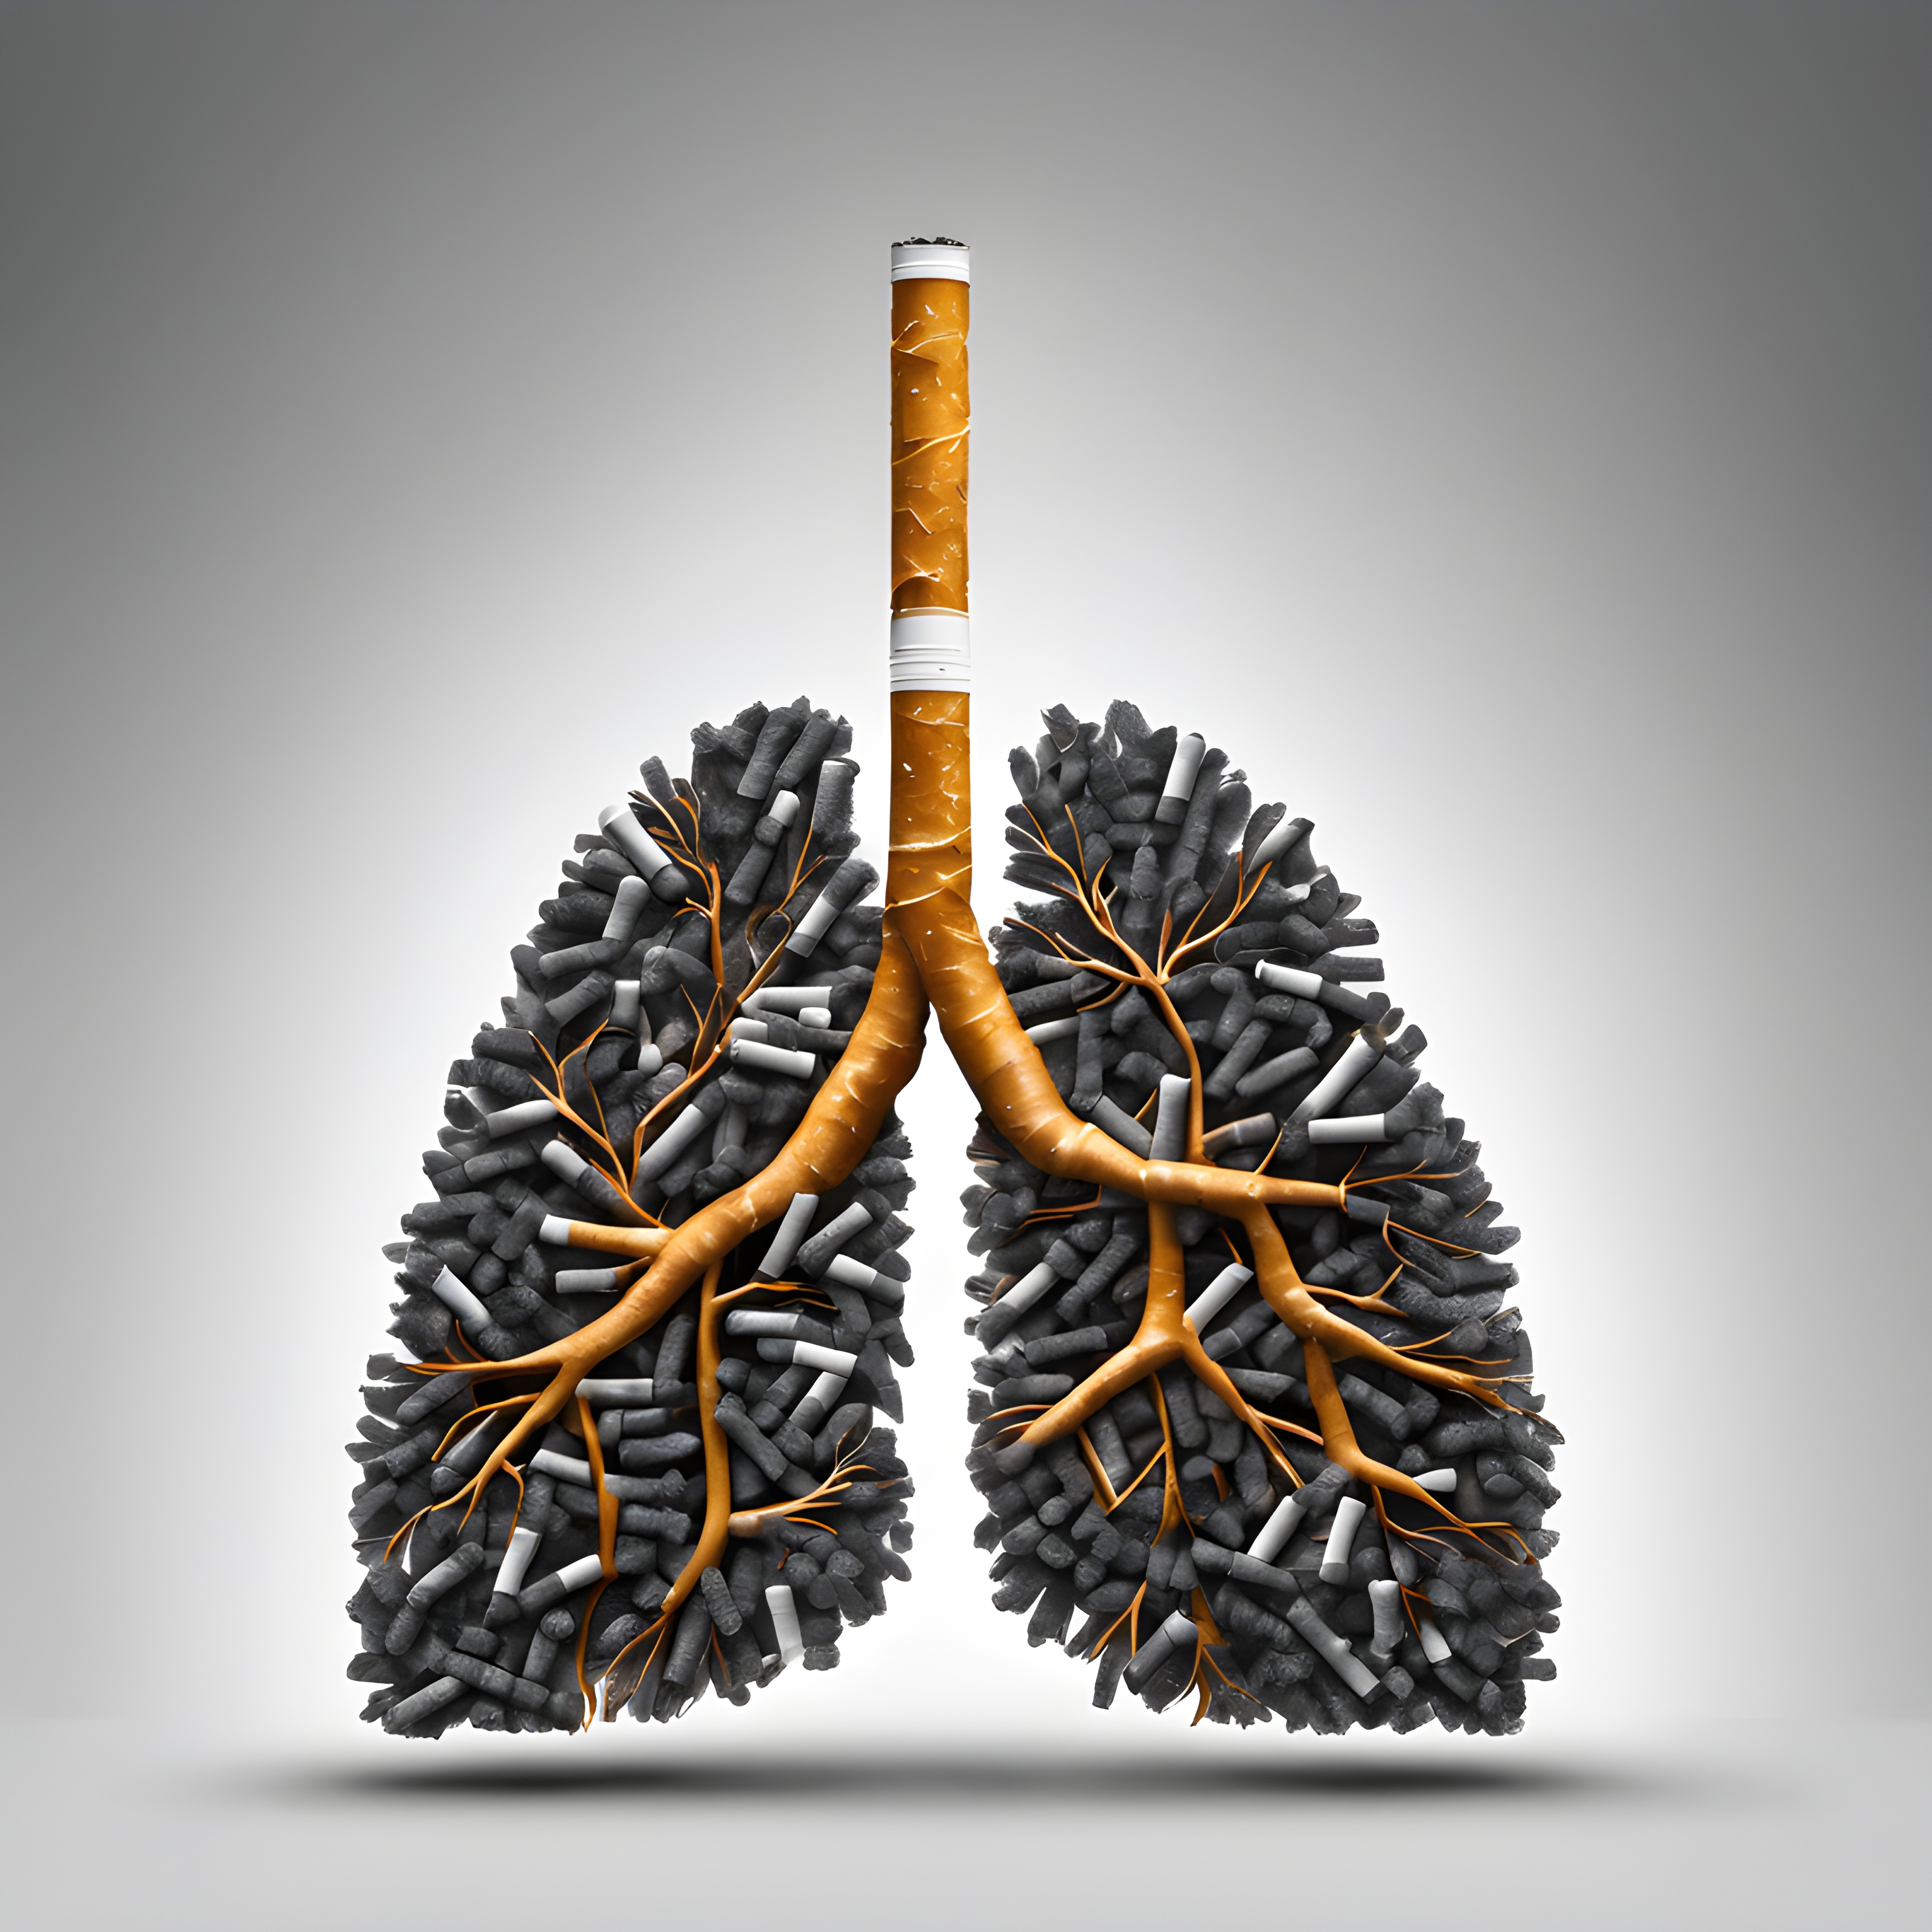 ภาพสต็อกที่สะดุดตาและกระตุ้นความคิดของปอดมนุษย์ที่ทำจากบุหรี่ นำเสนอผลกระทบต่อสิ่งแวดล้อมที่มีต่อสุขภาพ ความแตกต่างระหว่างสีคล้ำจากการสูบบุหรี่กับฉากหลังสีเทาอ่อนทำให้เกิดองค์ประกอบภาพที่โดดเด่นสะดุดตา ตรวจสอบให้แน่ใจว่าองค์ประกอบทั้งหมดอยู่ตรงกลางเฟรมเพื่อเน้นย้ำถึงความสำคัญขององค์ประกอบเหล่านั้น